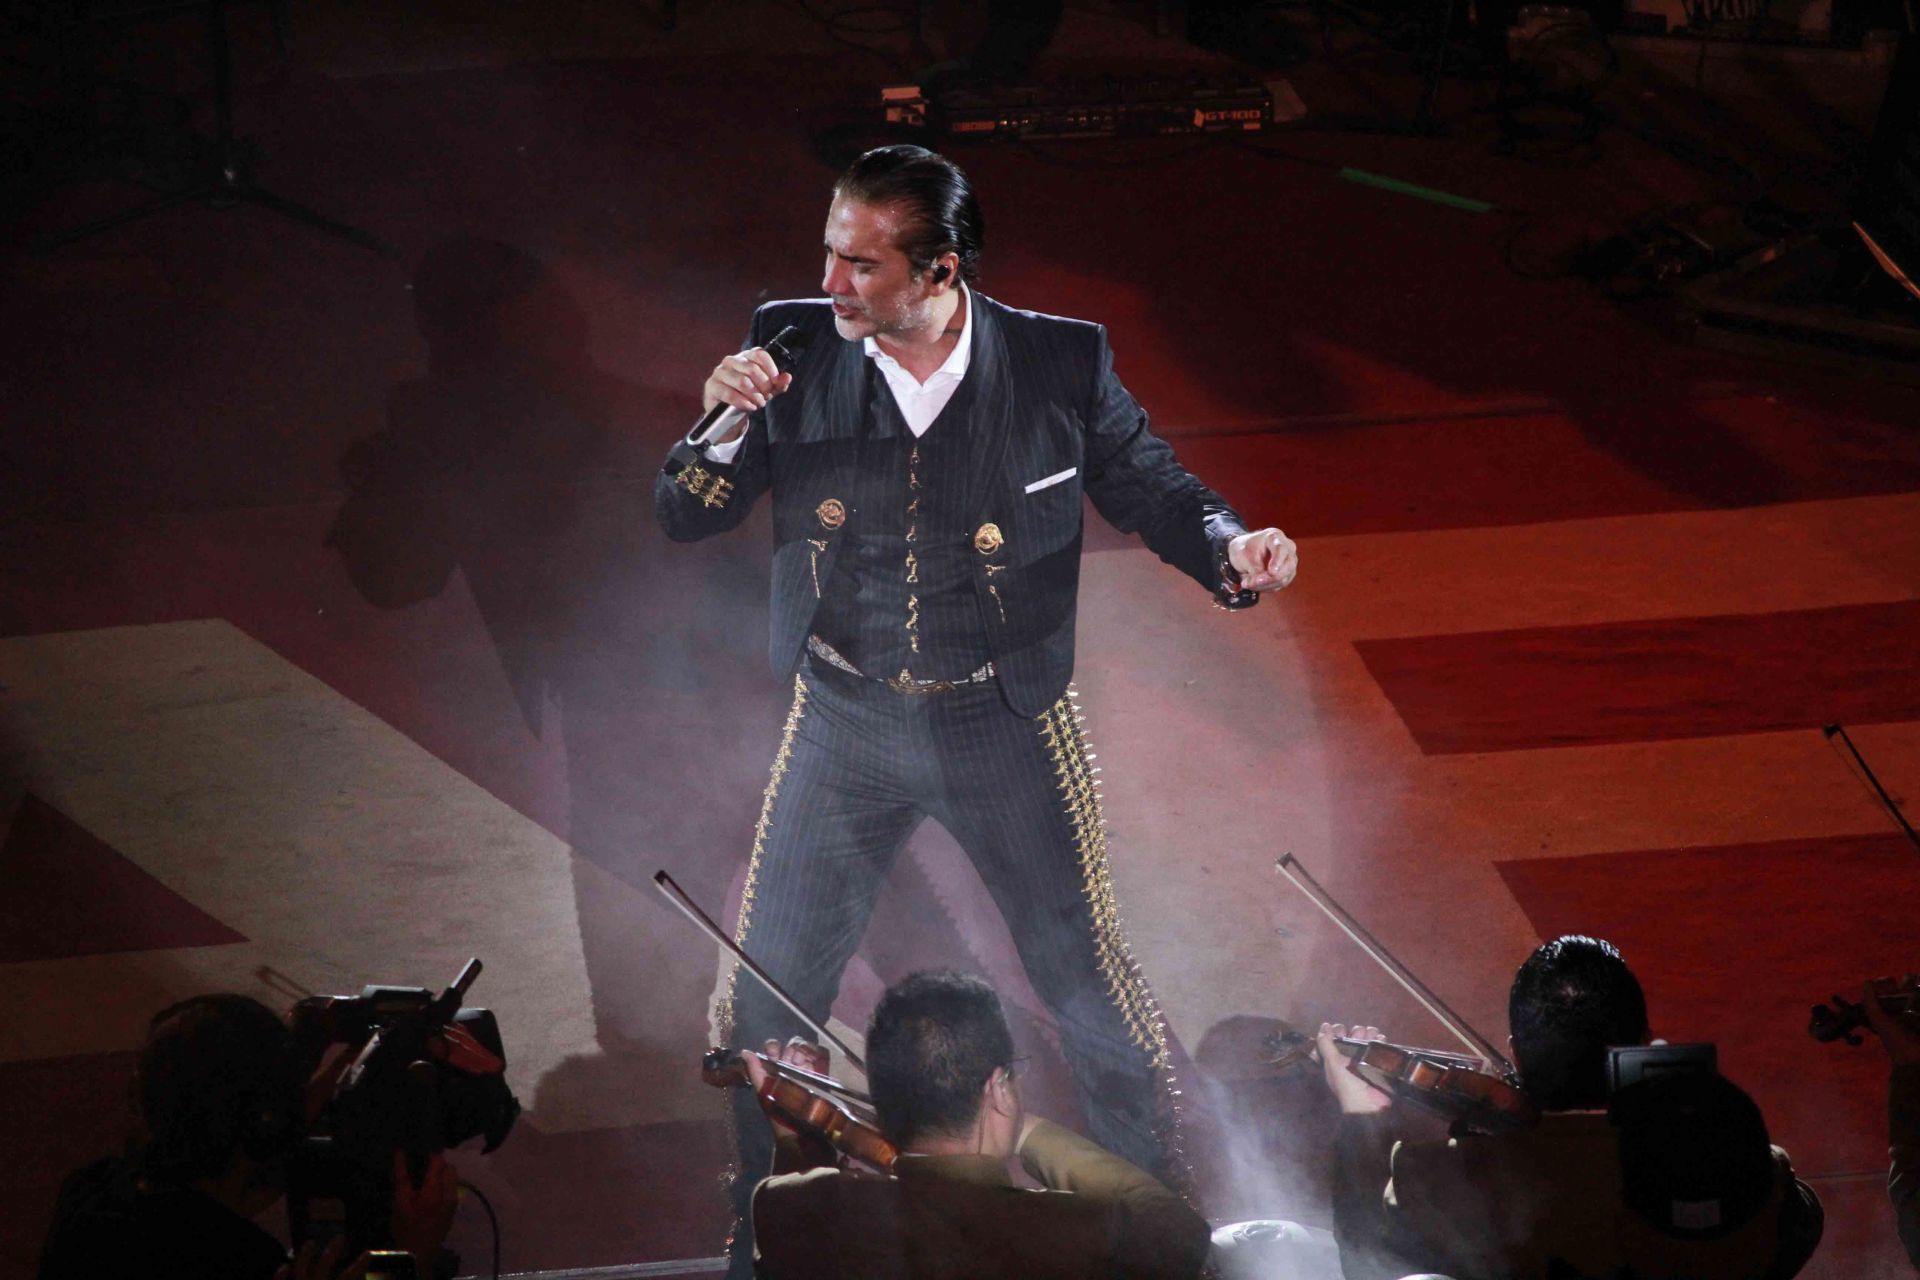 El cantante mexicano rindió un homenaje a Vicente Fernández con fotografías de sus momentos más felices en el escenario, pues compartieron micrófono en innumerables espectáculos

FOTO: MARCELO PALACIOS /CUARTOSCURO.COM